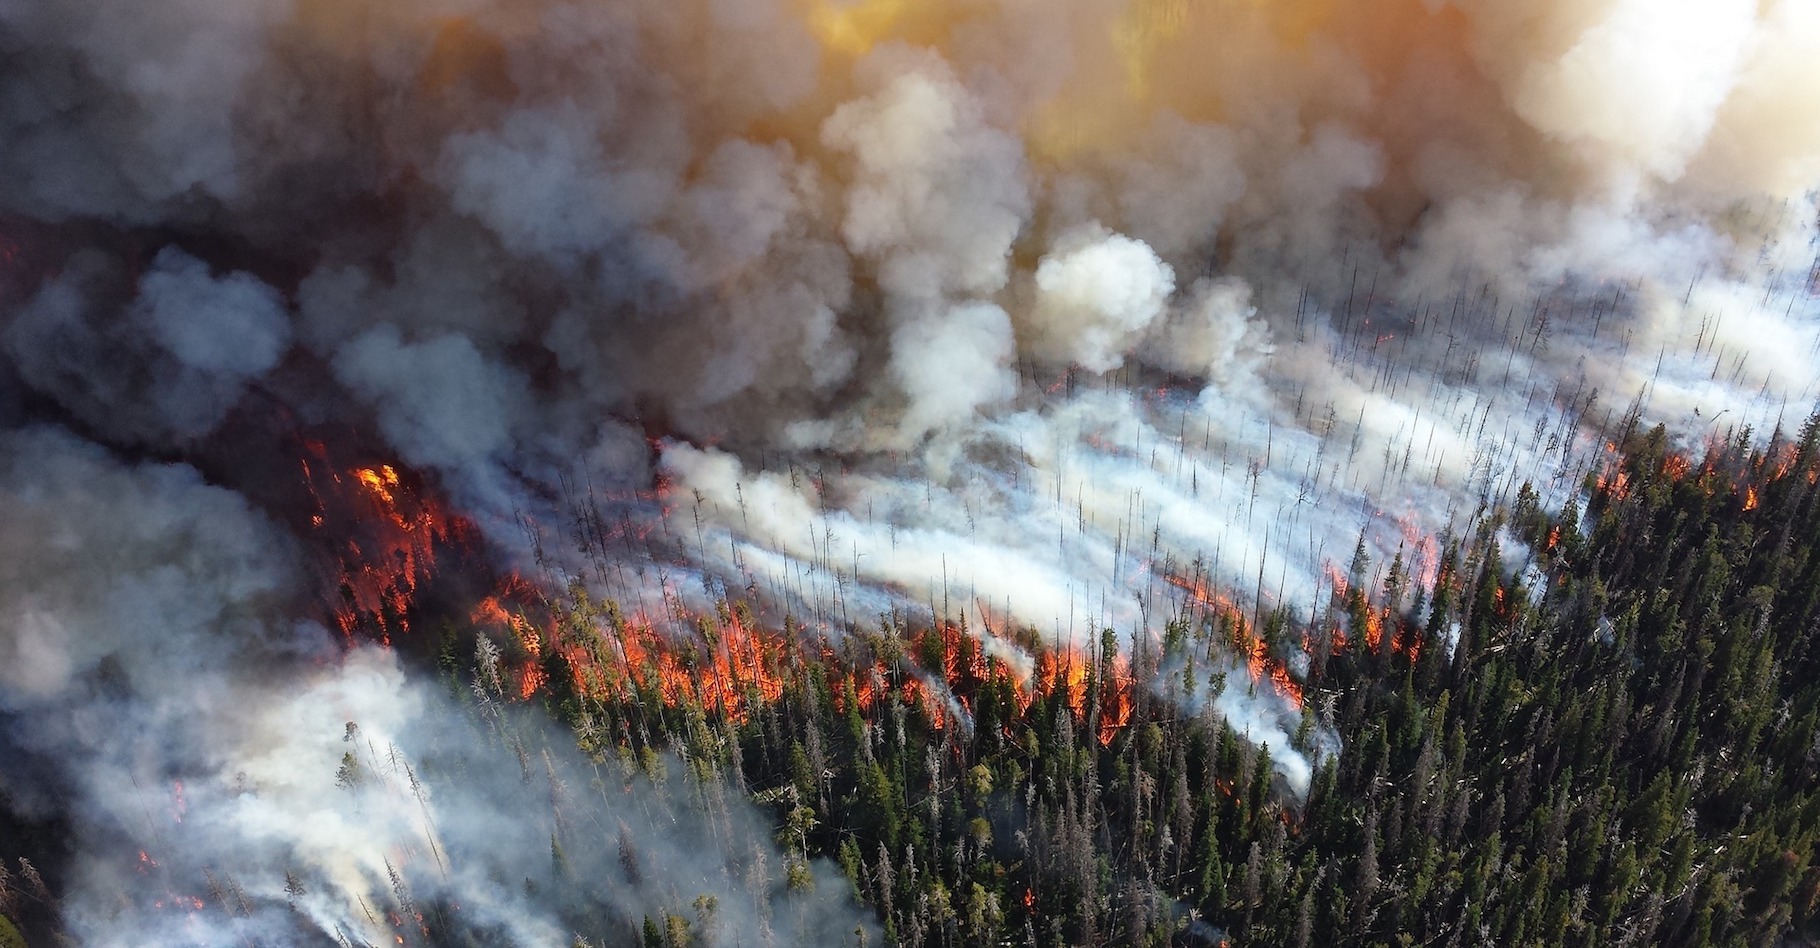 Les feux de forêt émettent une grande quantité de monoxyde de carbone, un gaz qui peut causer à l’Homme des intoxications mortelles. Quels sont les symptômes et traitements de l'intoxication au monoxyde de carbone ? © skeeze, Pixabay, DP